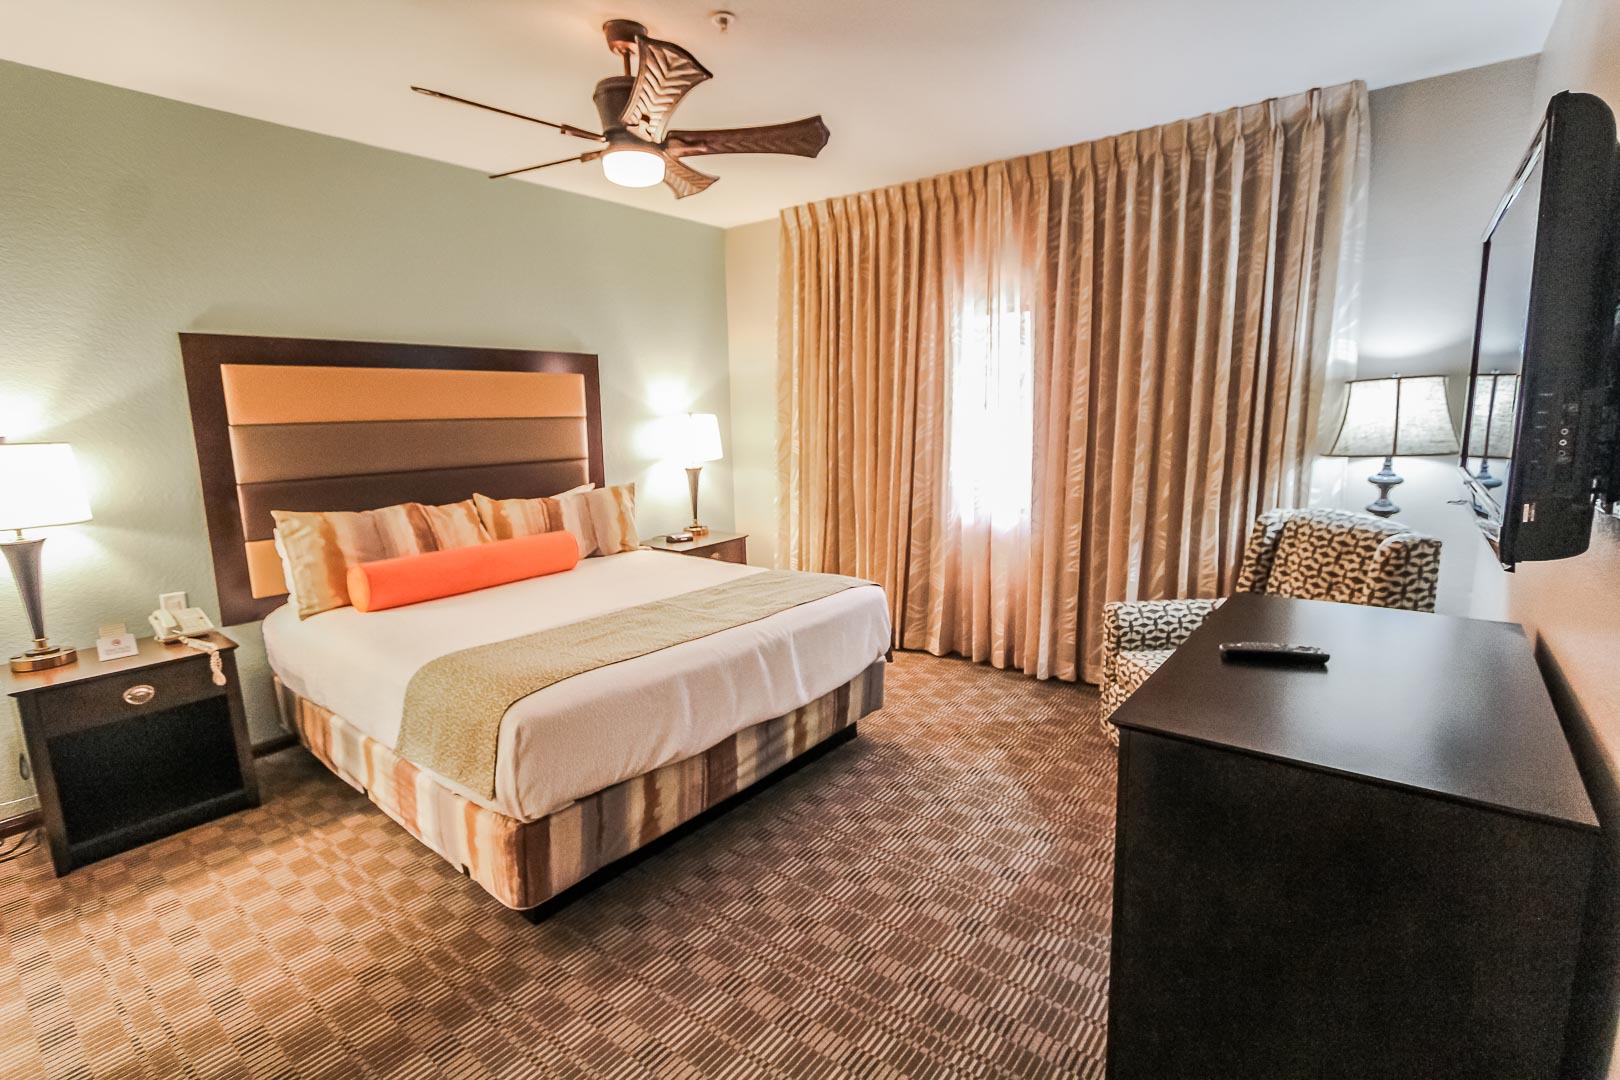 A beautiful master bedroom at VRI's Desert Isle Resort in California.